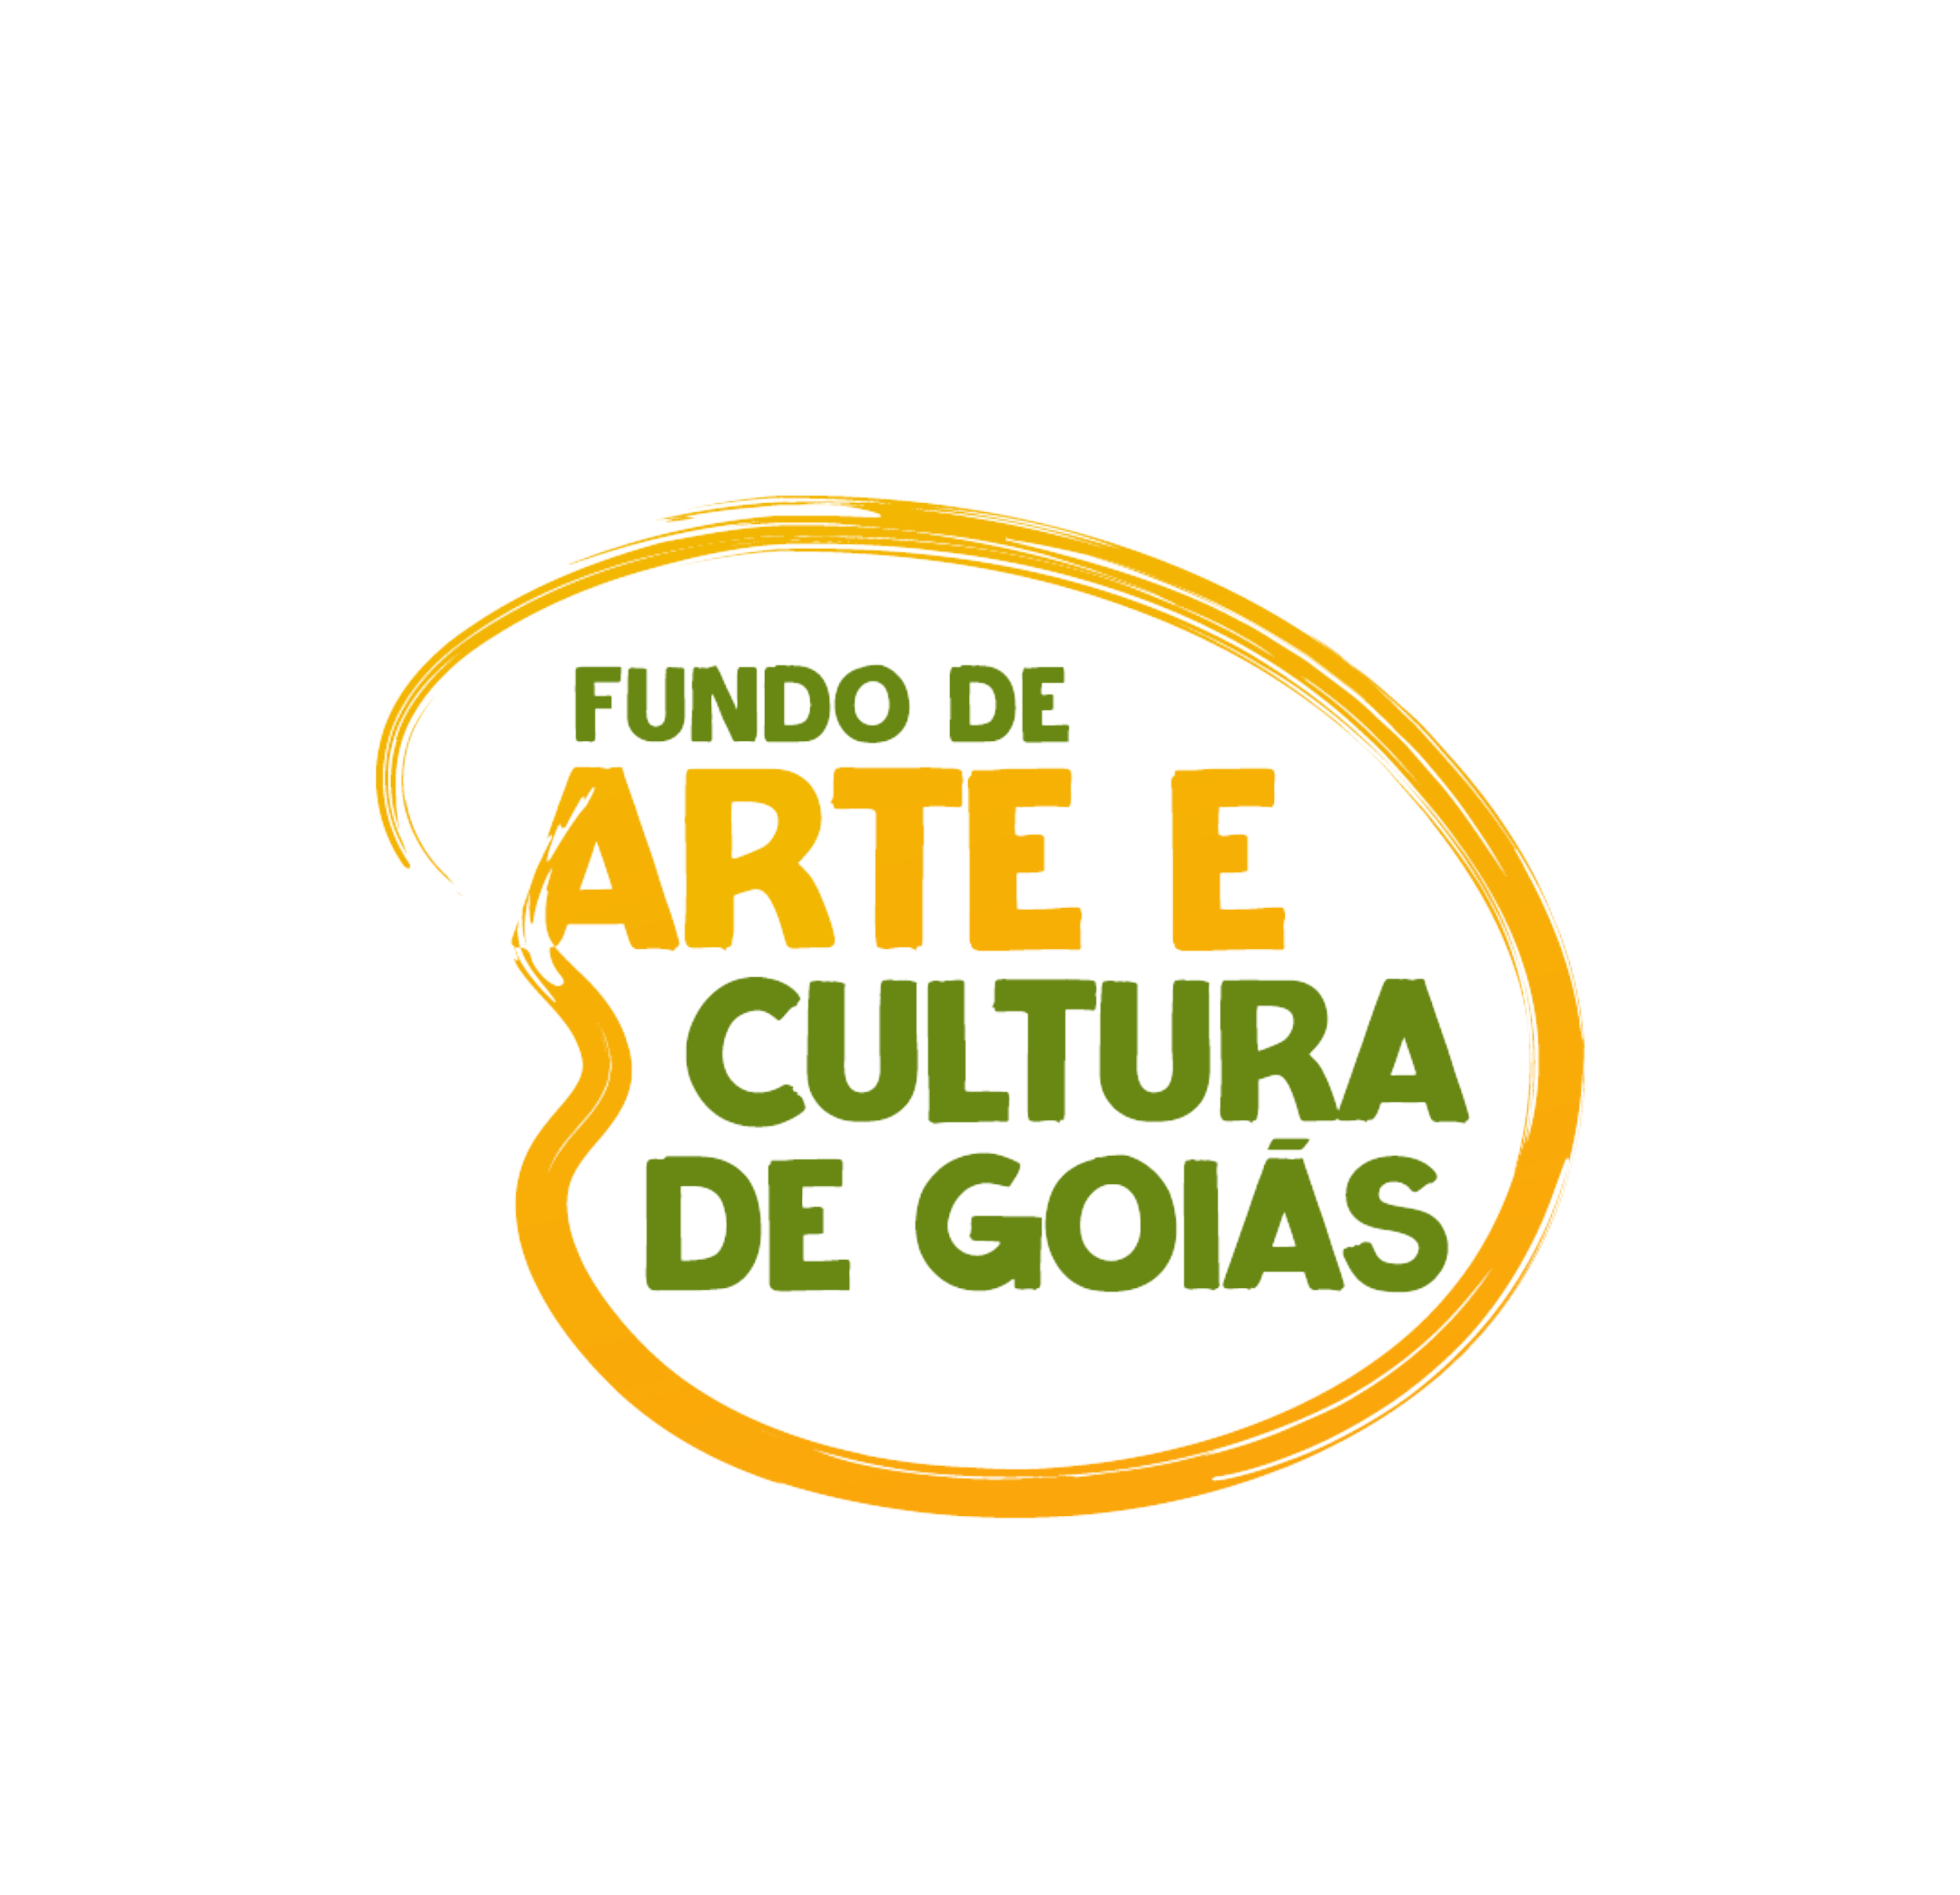 Fundo de Arte e Cultura de Goiás - FAC